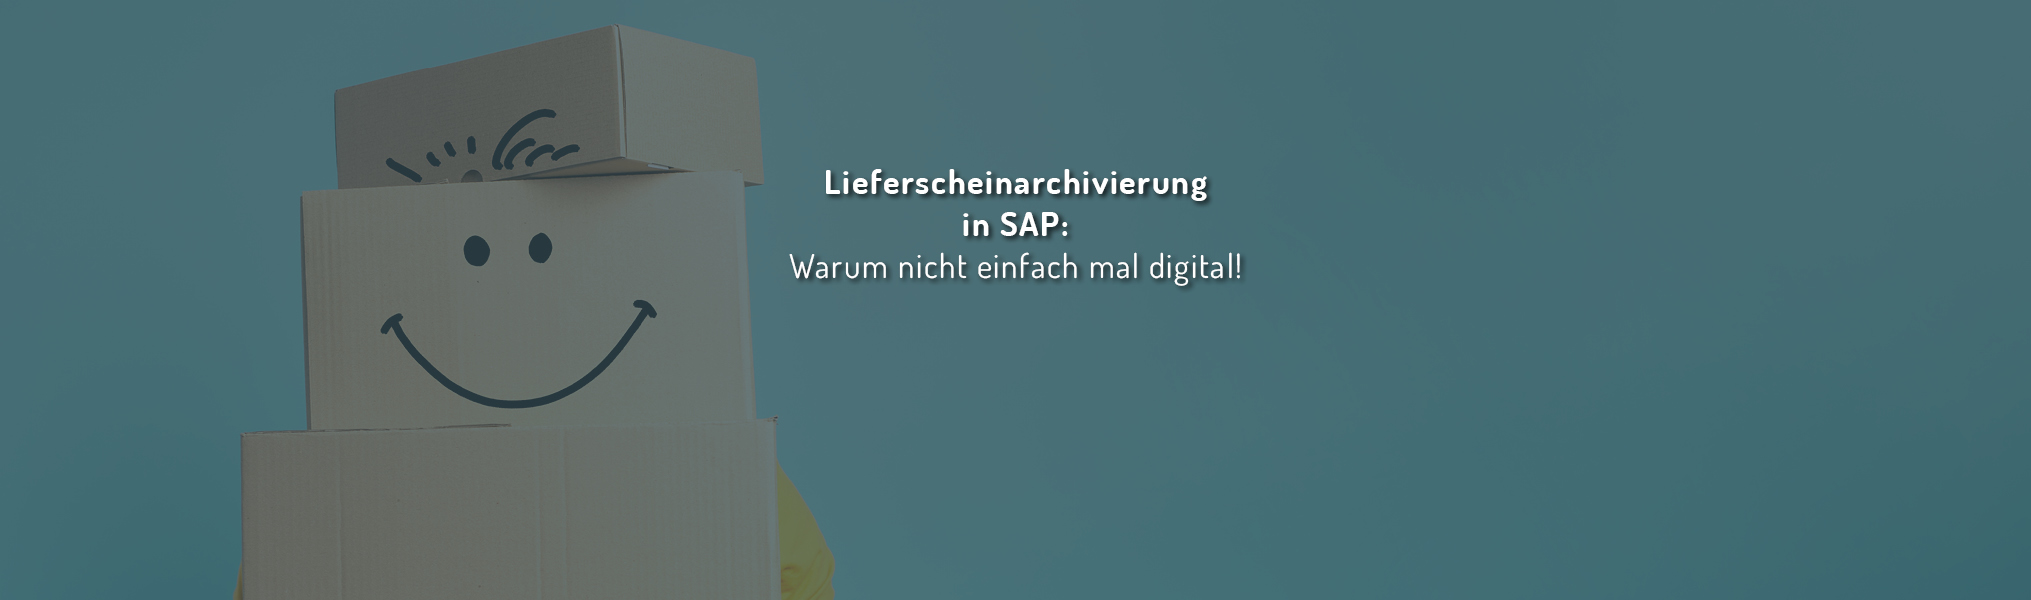 Lieferscheinarchivierung in SAP: Warum nicht einfach mal digital!